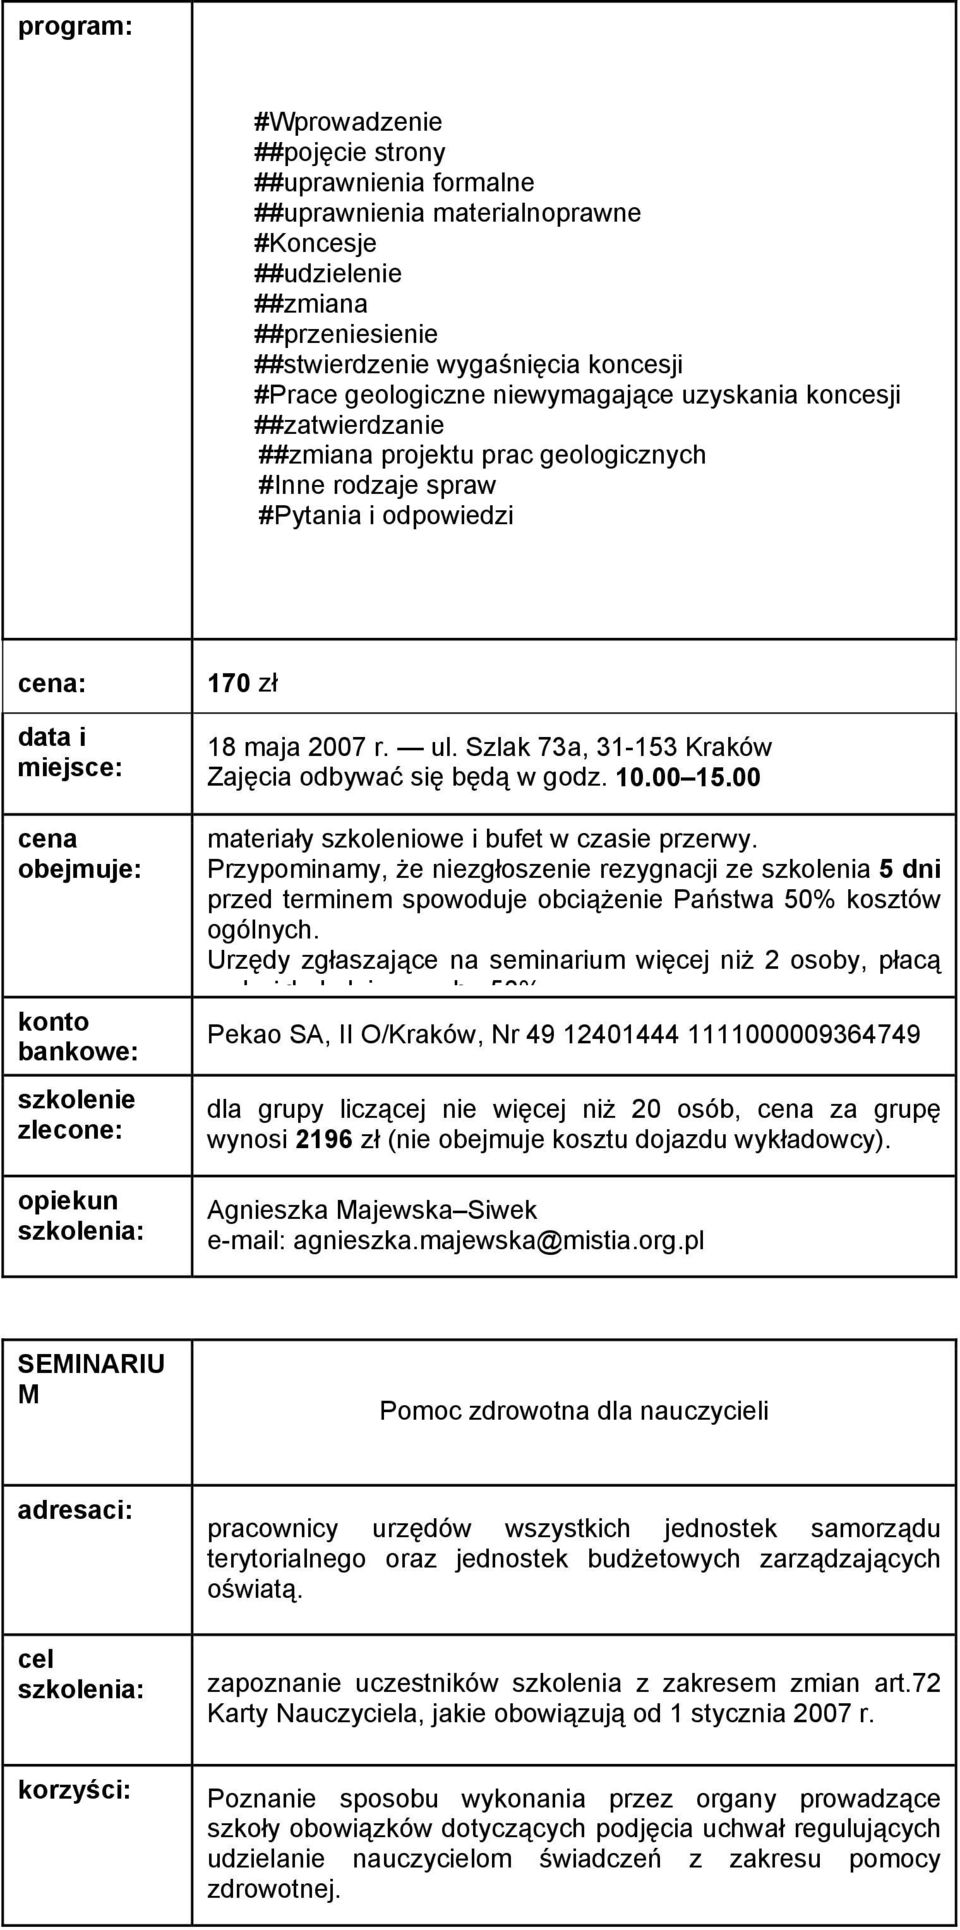 Szlak 73a, 31-153 Kraków Zajęcia odbywać się będą w godz. 10.00 15.00 dla grupy liczącej nie więcej niż 20 osób, za grupę wynosi 2196 zł (nie obejmuje kosztu dojazdu wykładowcy).